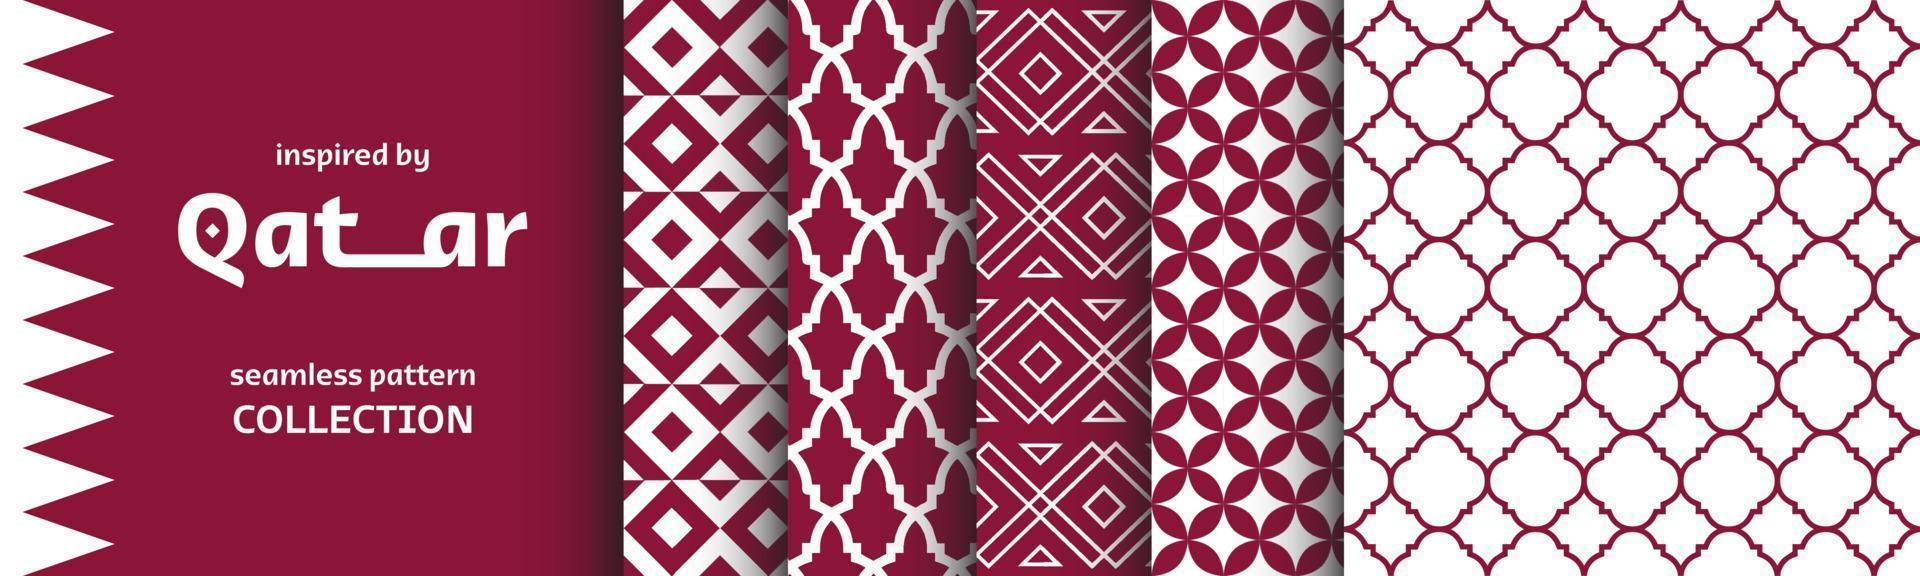 coleção de padrões sem emenda do qatar inspirada na cultura e arte árabe. conjunto de gráficos vetoriais com planos de fundo e texturas. visuais étnicos inspirados no país árabe. vetor